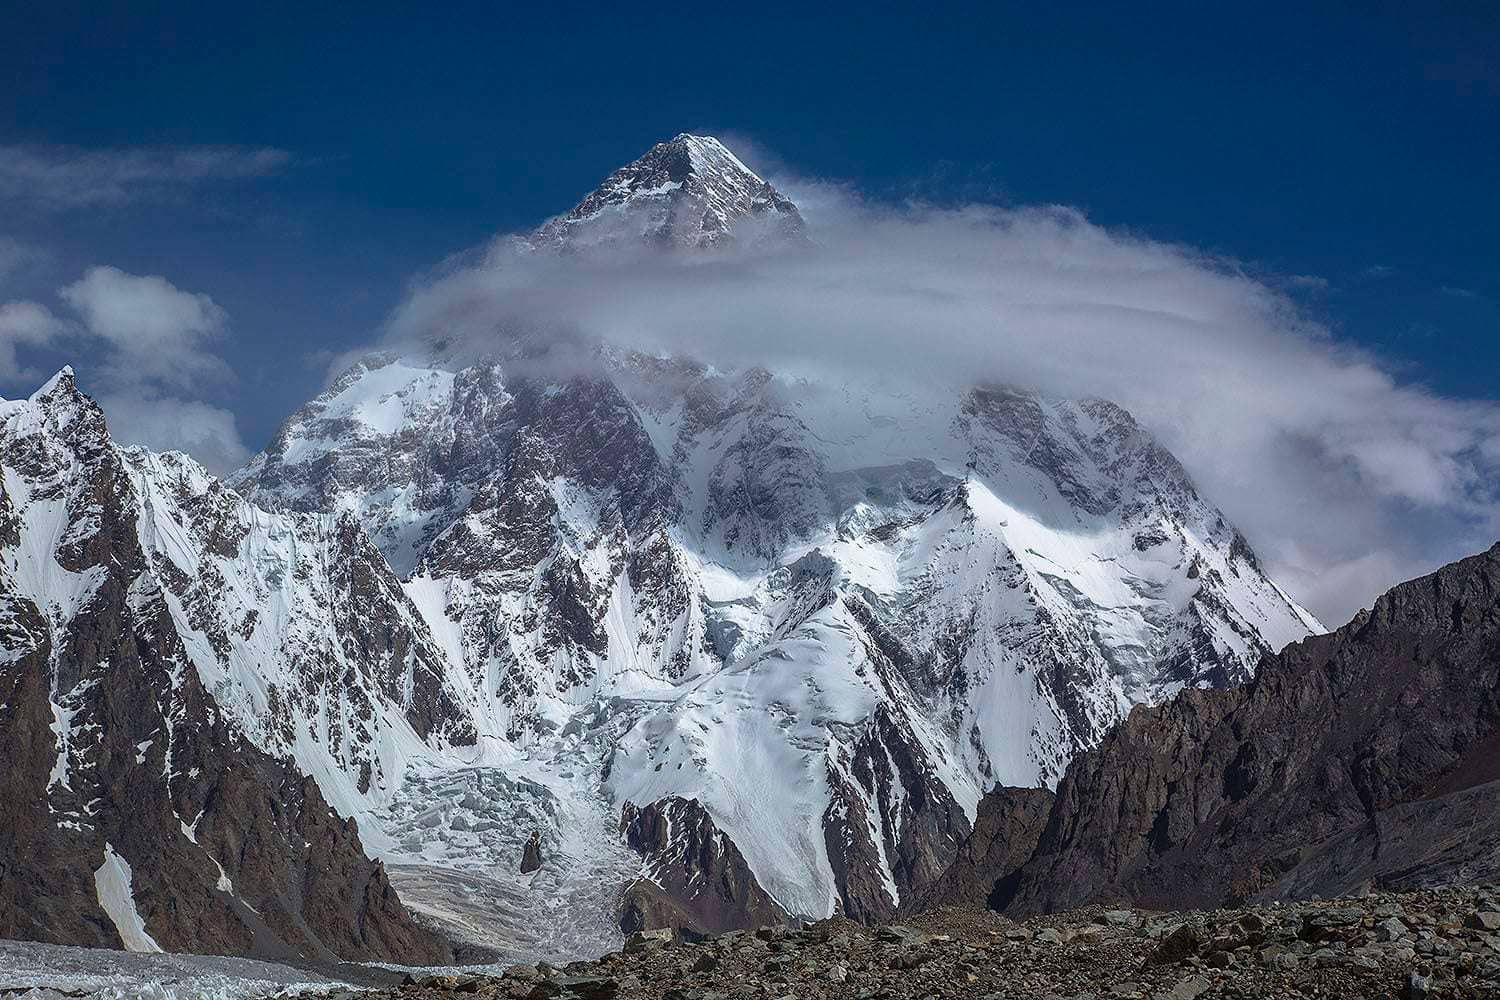 K2 BASE CAMP TREK | A Life Long Awaited Trek